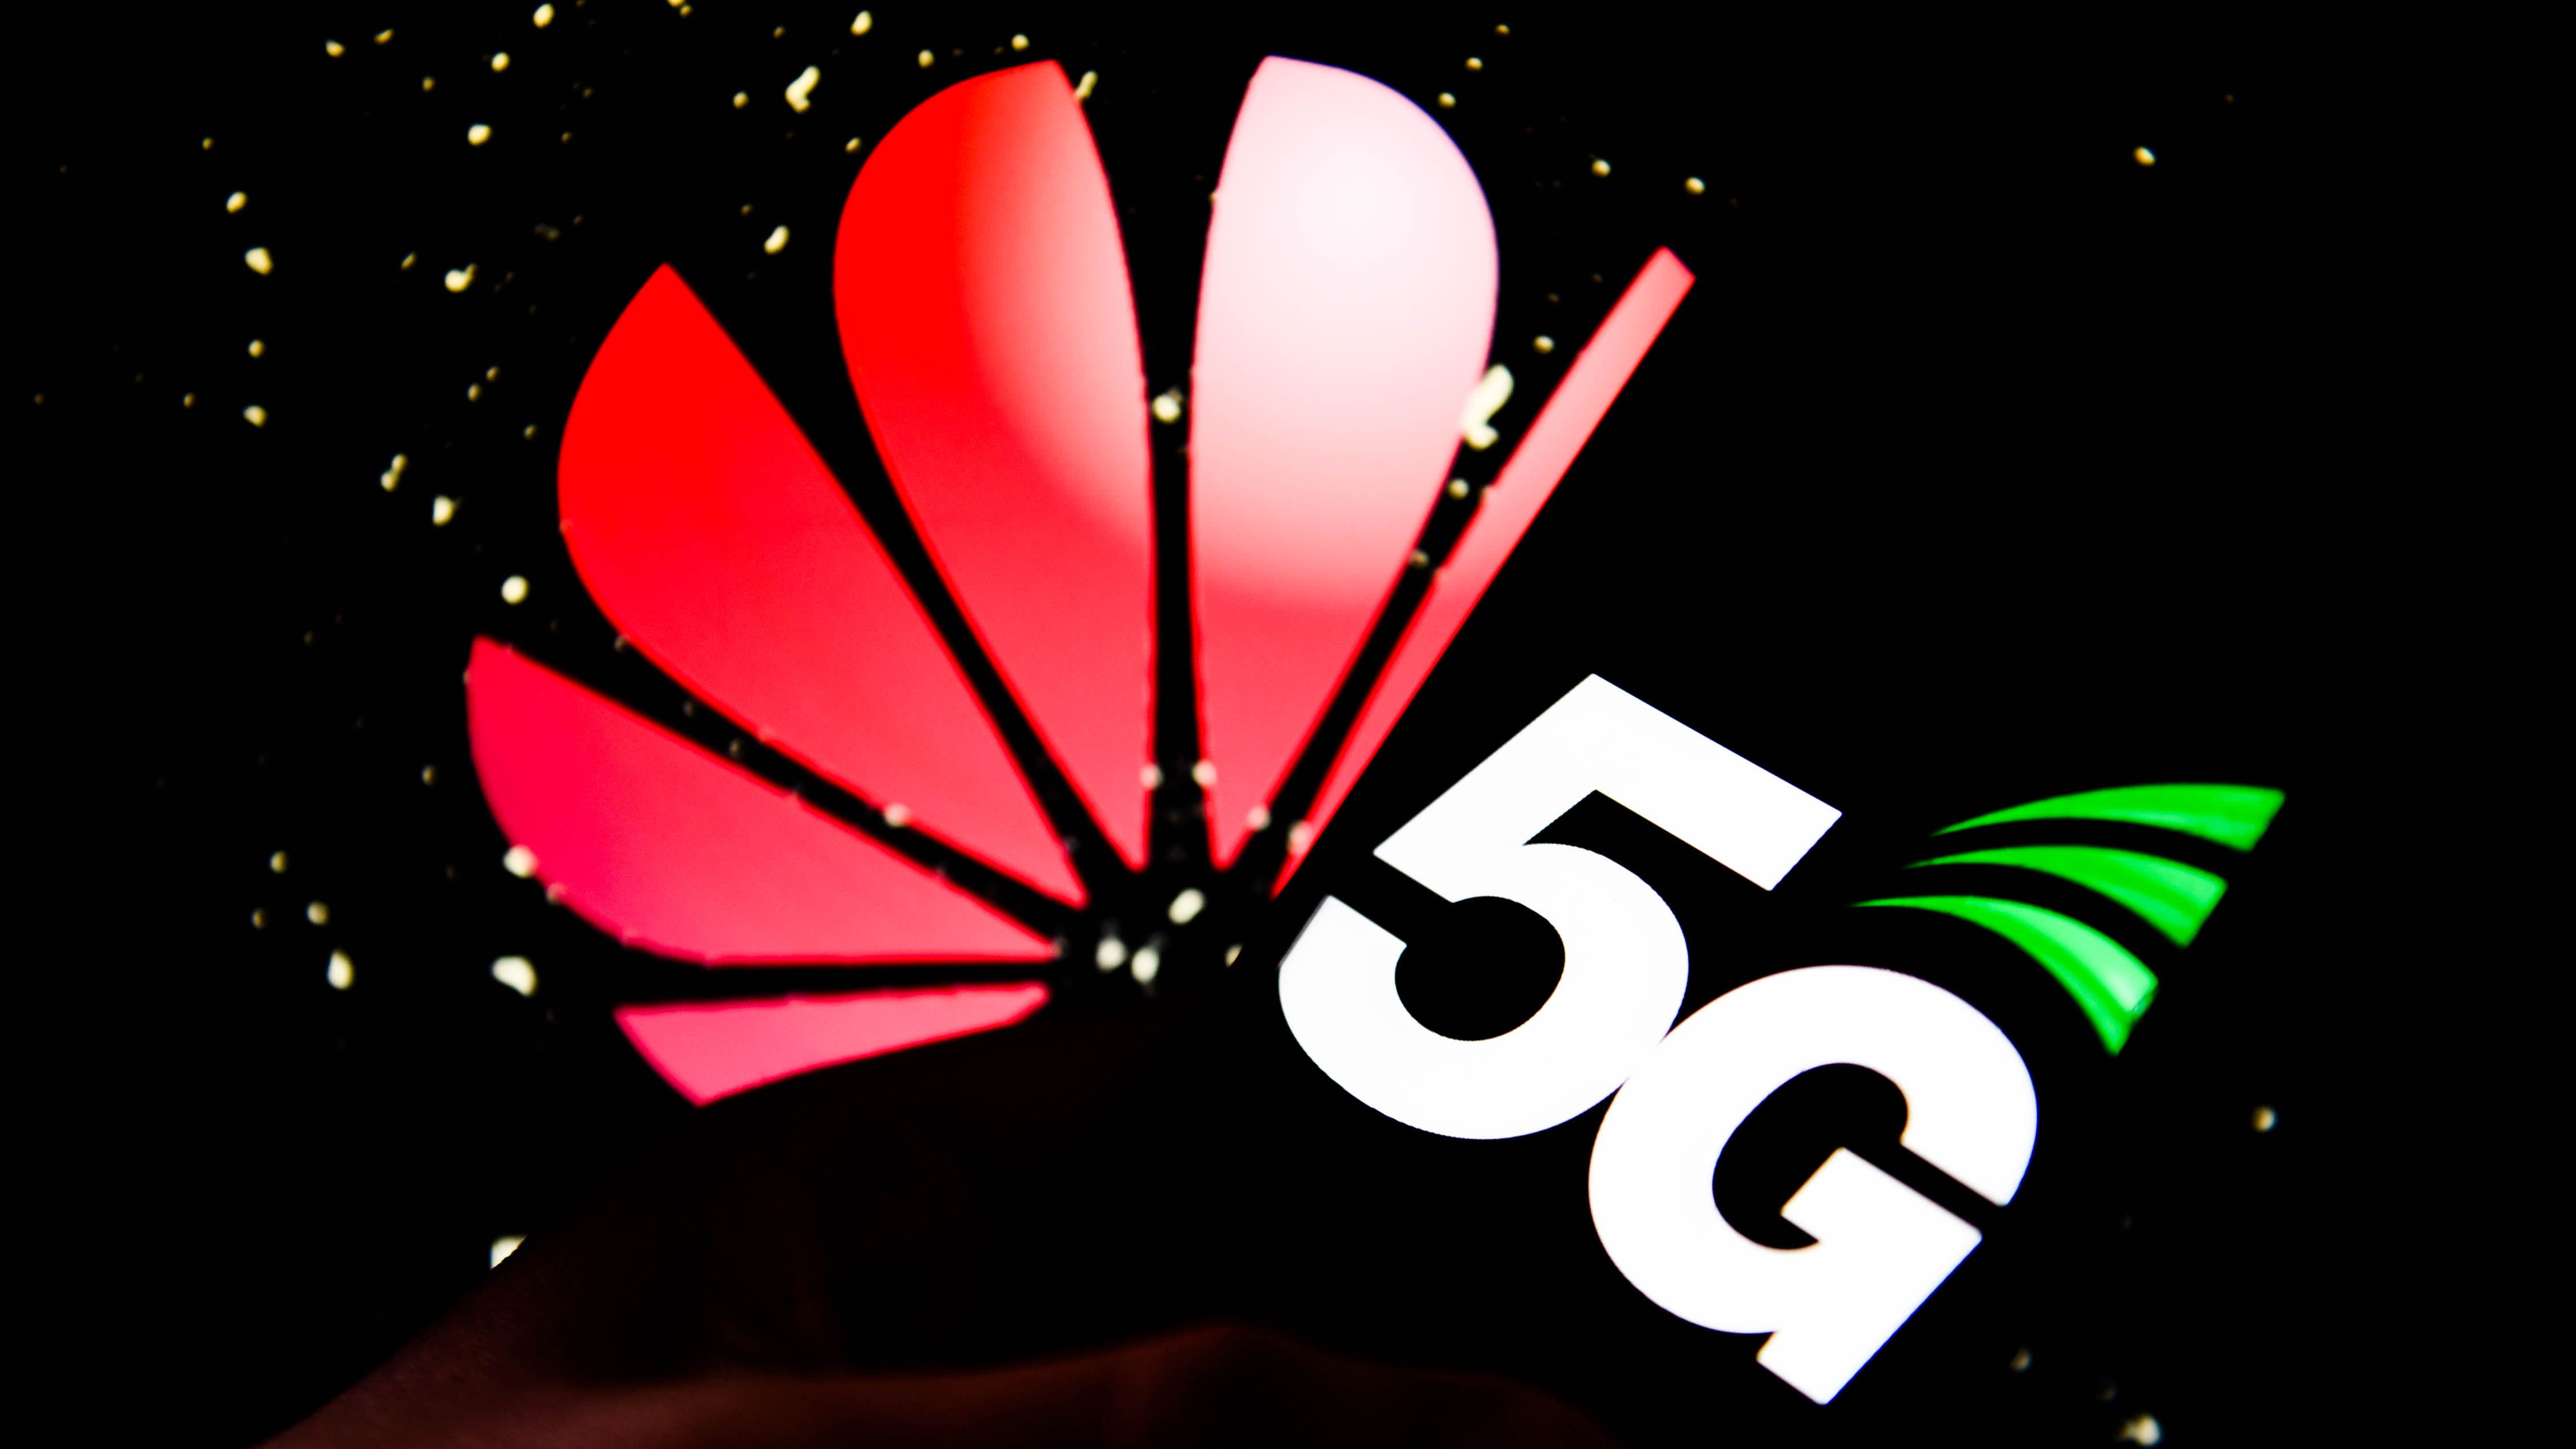 จีนเริ่มให้บริการ 5G อย่างเป็นทางการ ขึ้นแท่นโครงข่ายที่ใหญ่ที่สุดในโลก | ใช้อุปกรณ์ Huawei ไปกว่าครึ่ง